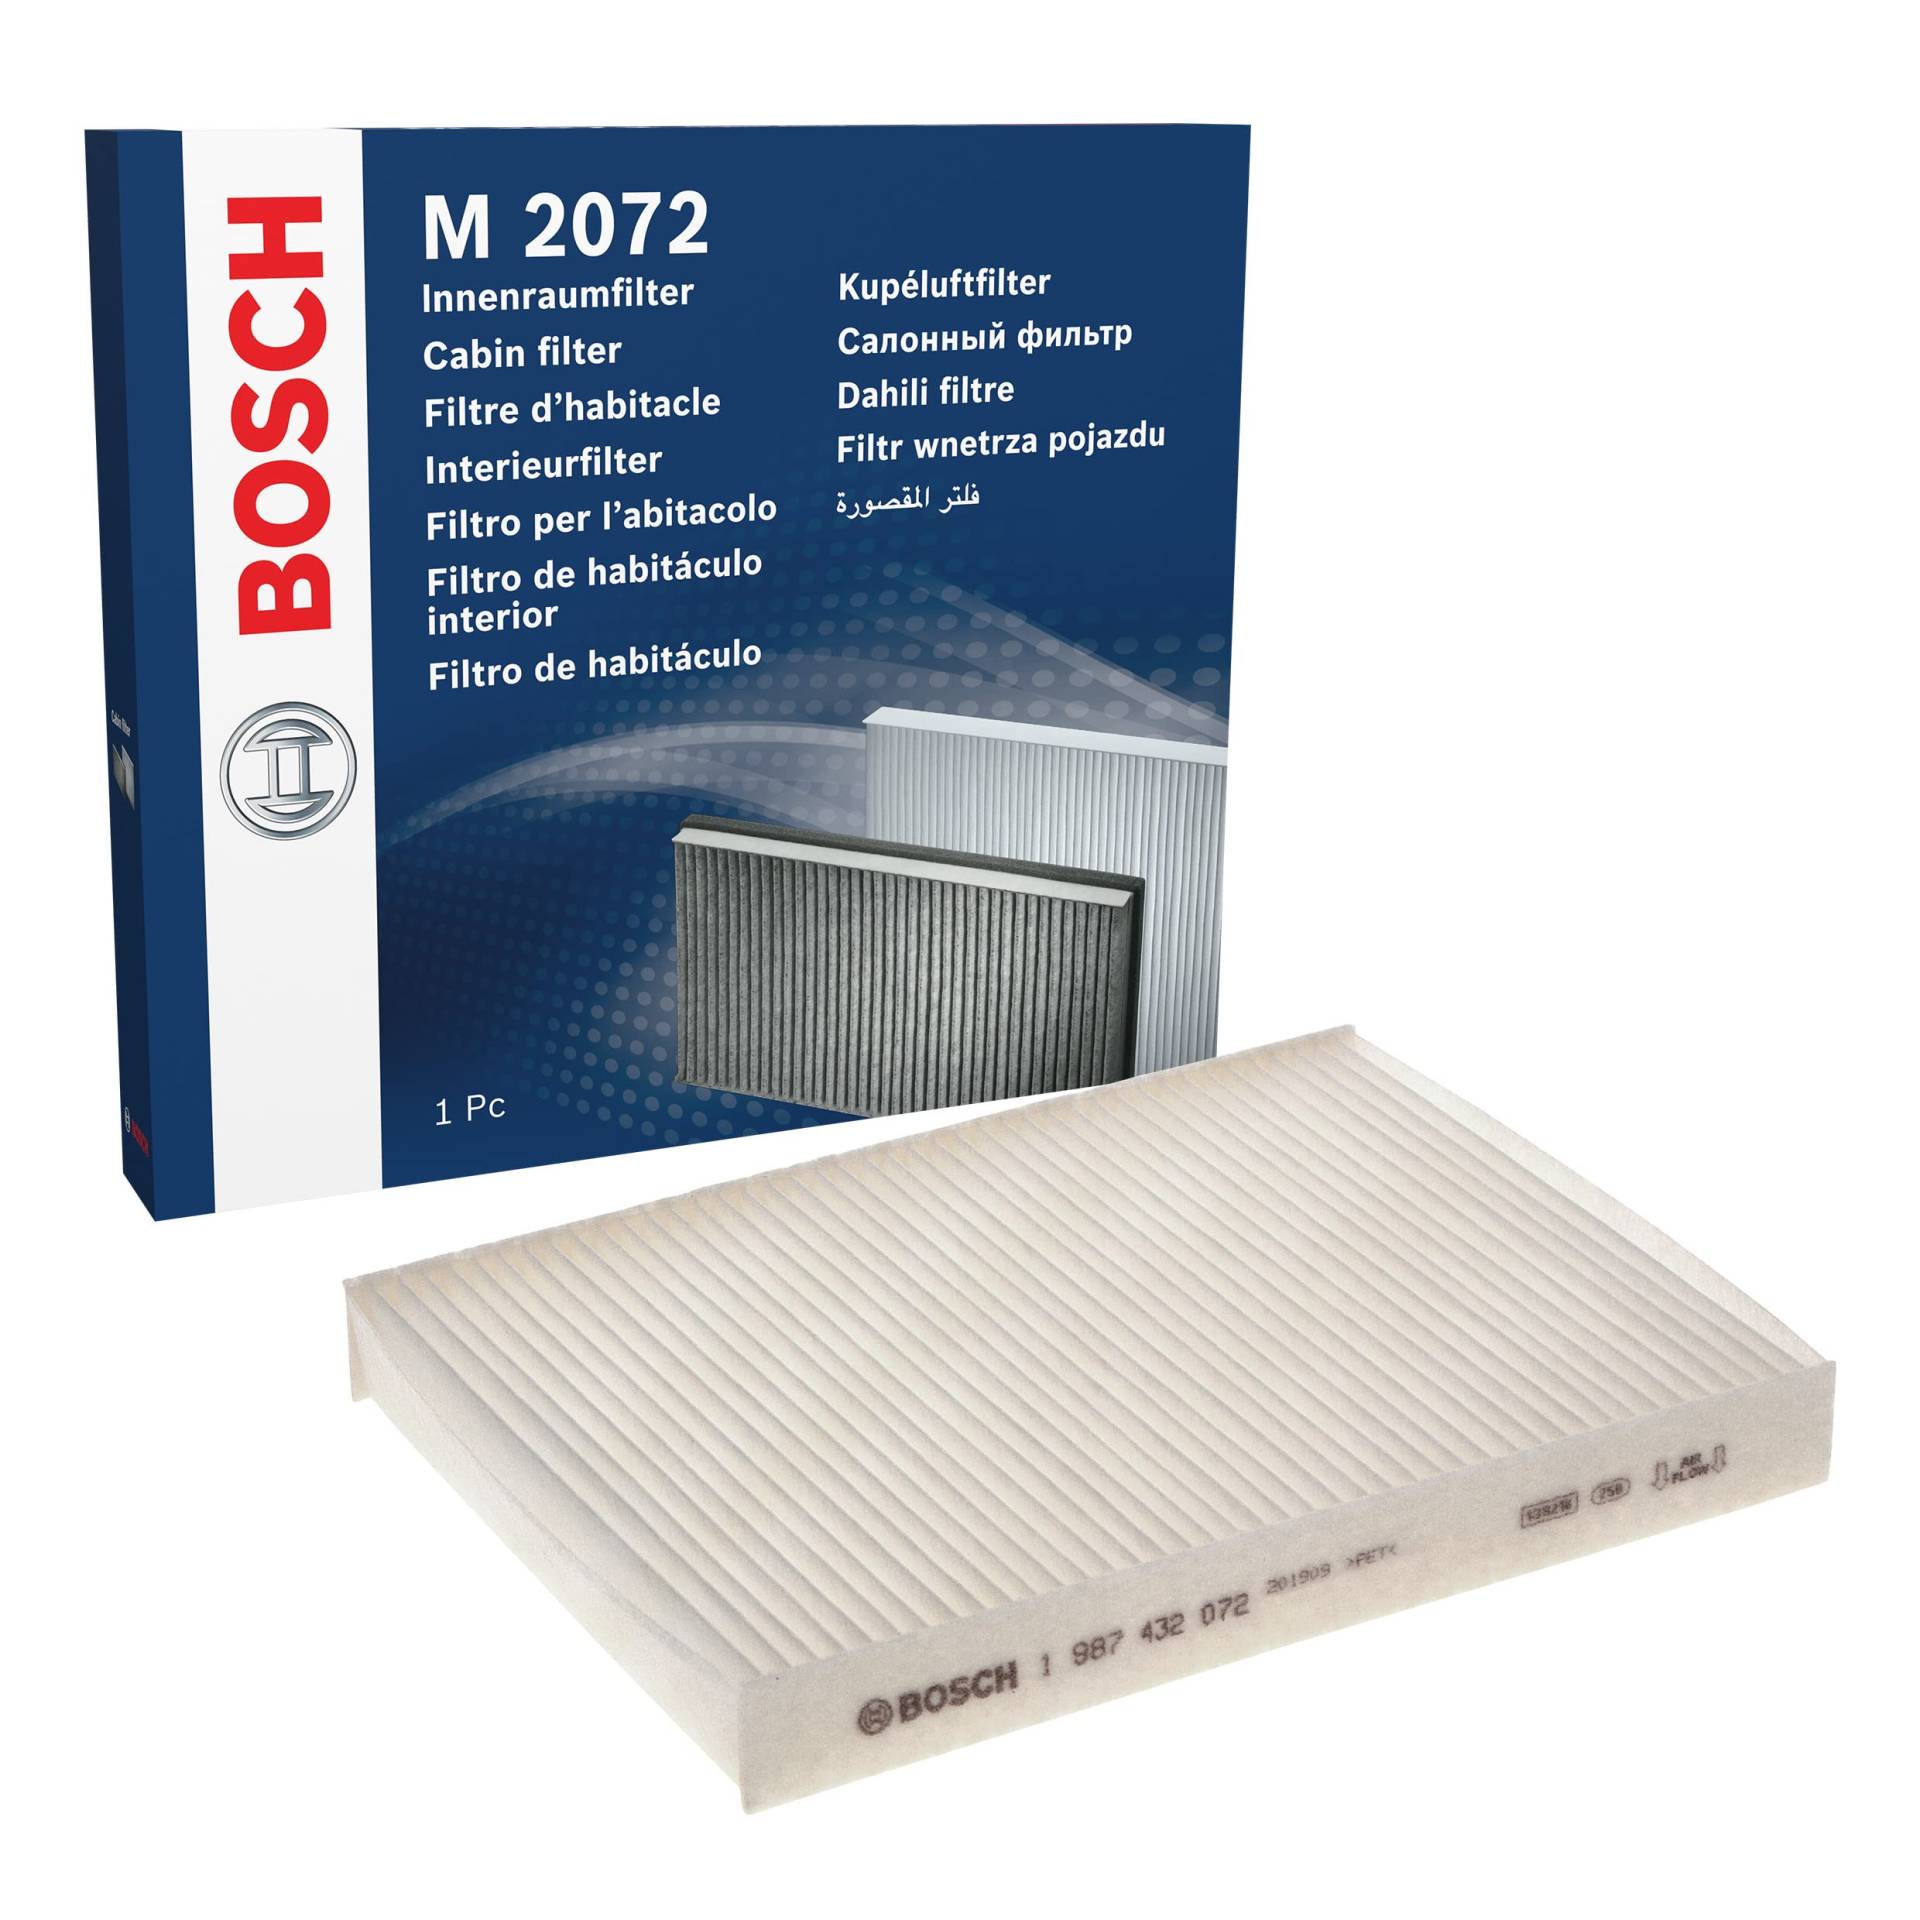 Bosch M2072 - Innenraumfilter Standard von Bosch Automotive